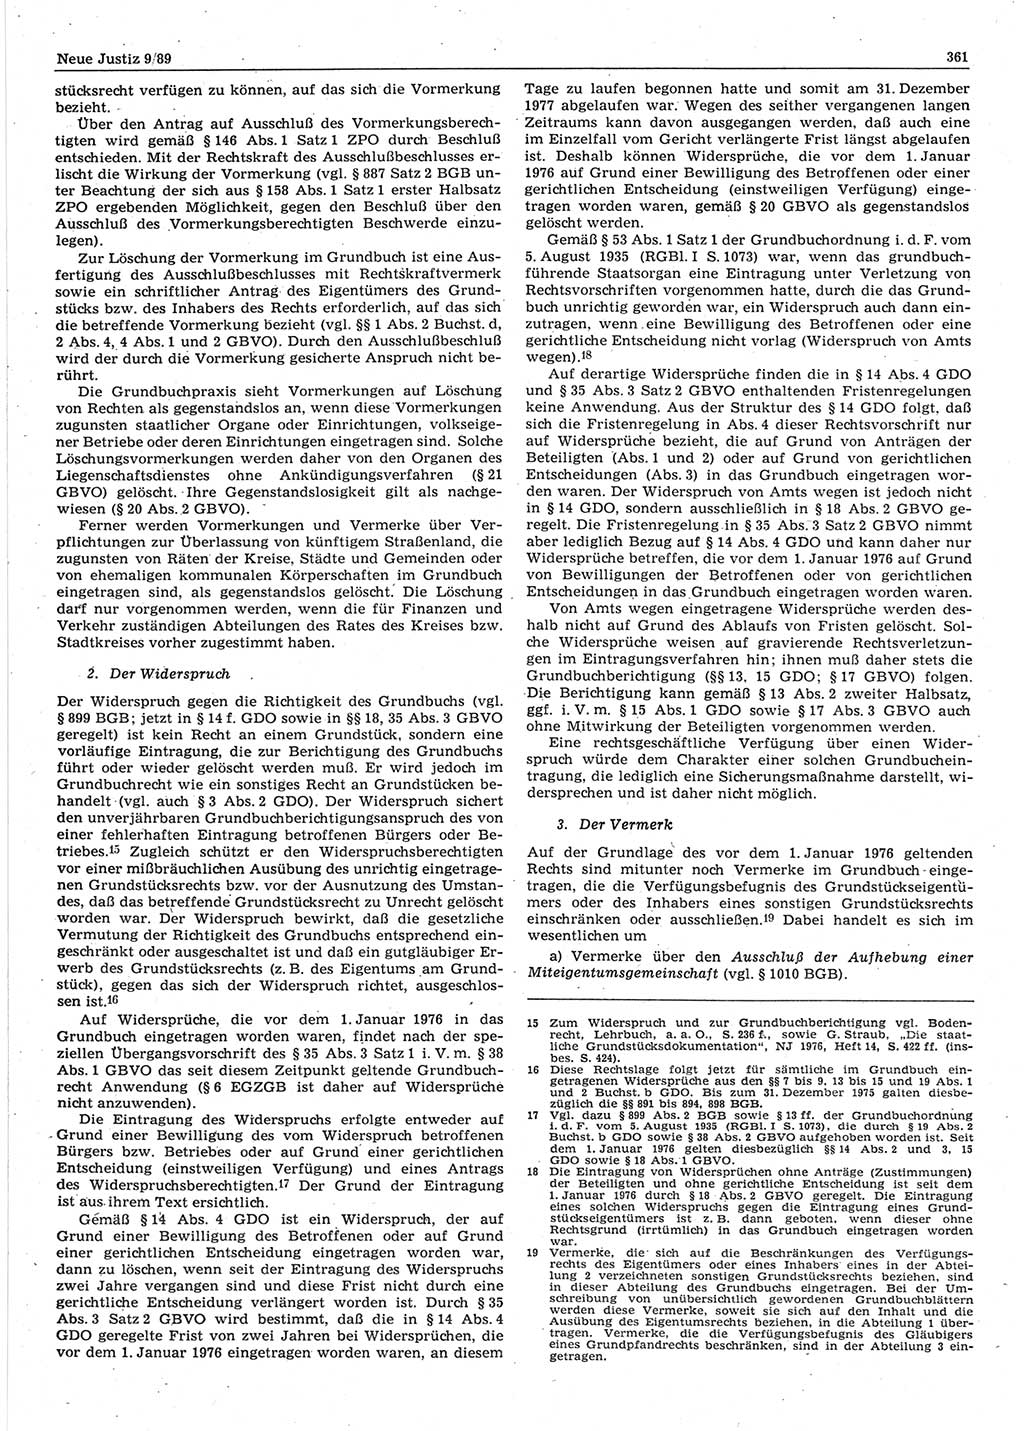 Neue Justiz (NJ), Zeitschrift für sozialistisches Recht und Gesetzlichkeit [Deutsche Demokratische Republik (DDR)], 43. Jahrgang 1989, Seite 361 (NJ DDR 1989, S. 361)